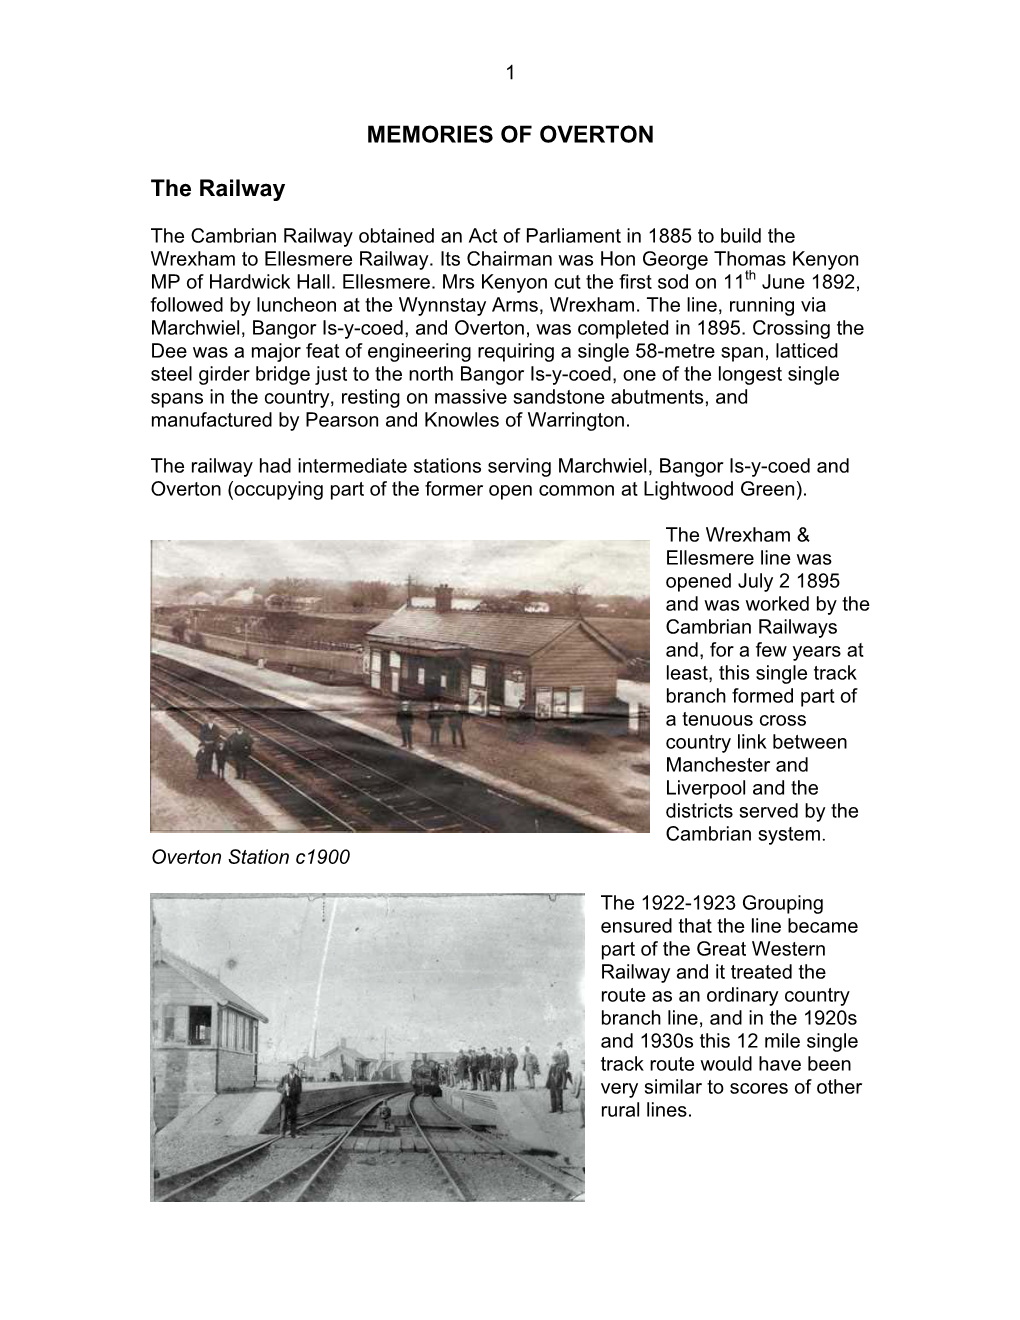 MEMORIES of OVERTON the Railway